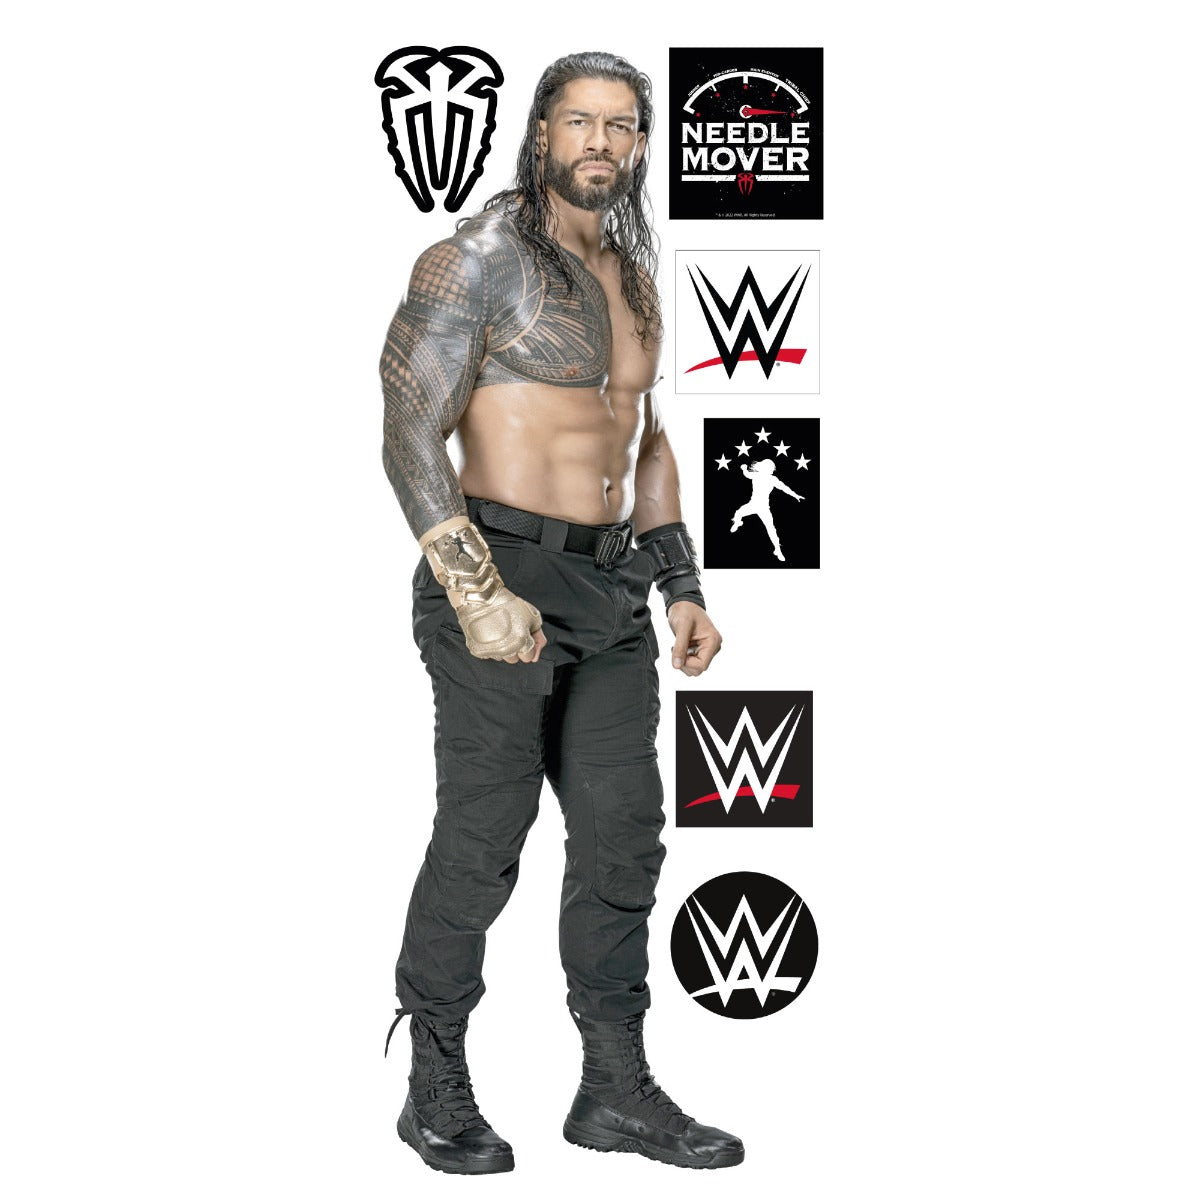 WWE - Roman Reigns Wrestler Decal + Bonus Wall Sticker Set